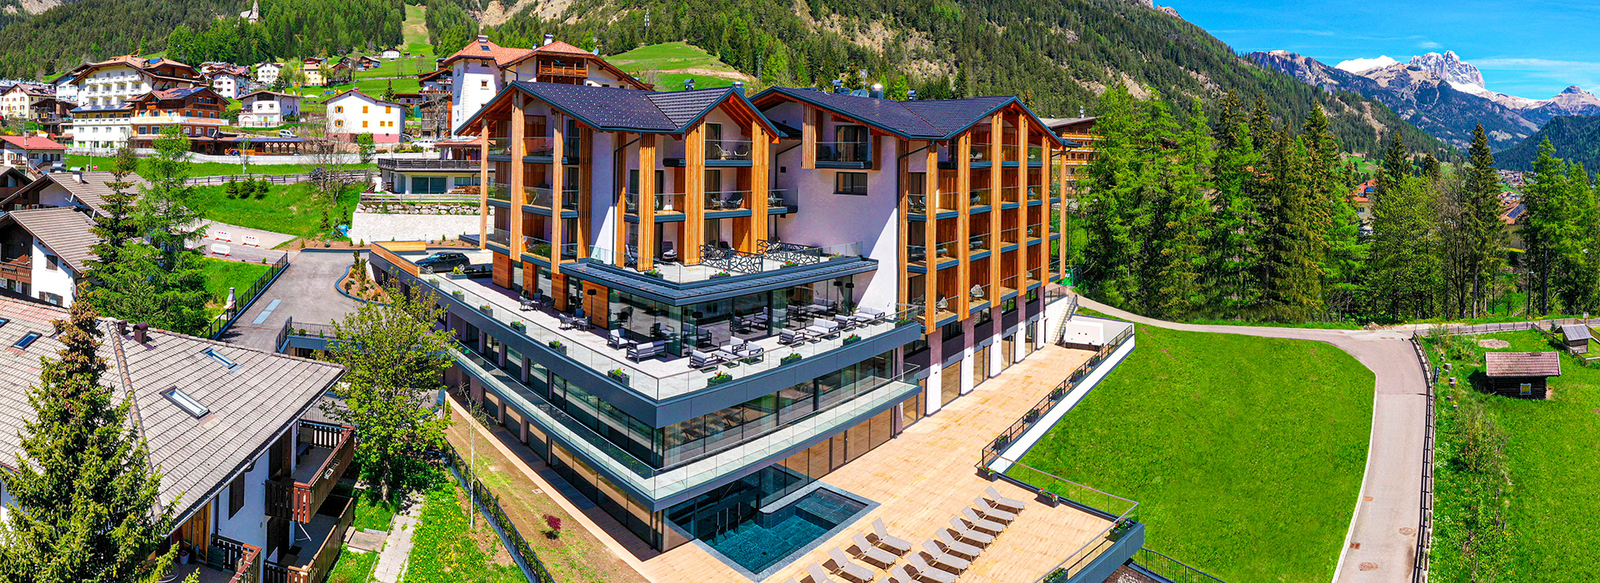 Ciampedie Luxury Alpine Spa Hotel 5*, Vigo di Fassa (TN), mezza pensione, 4 notti da € 495